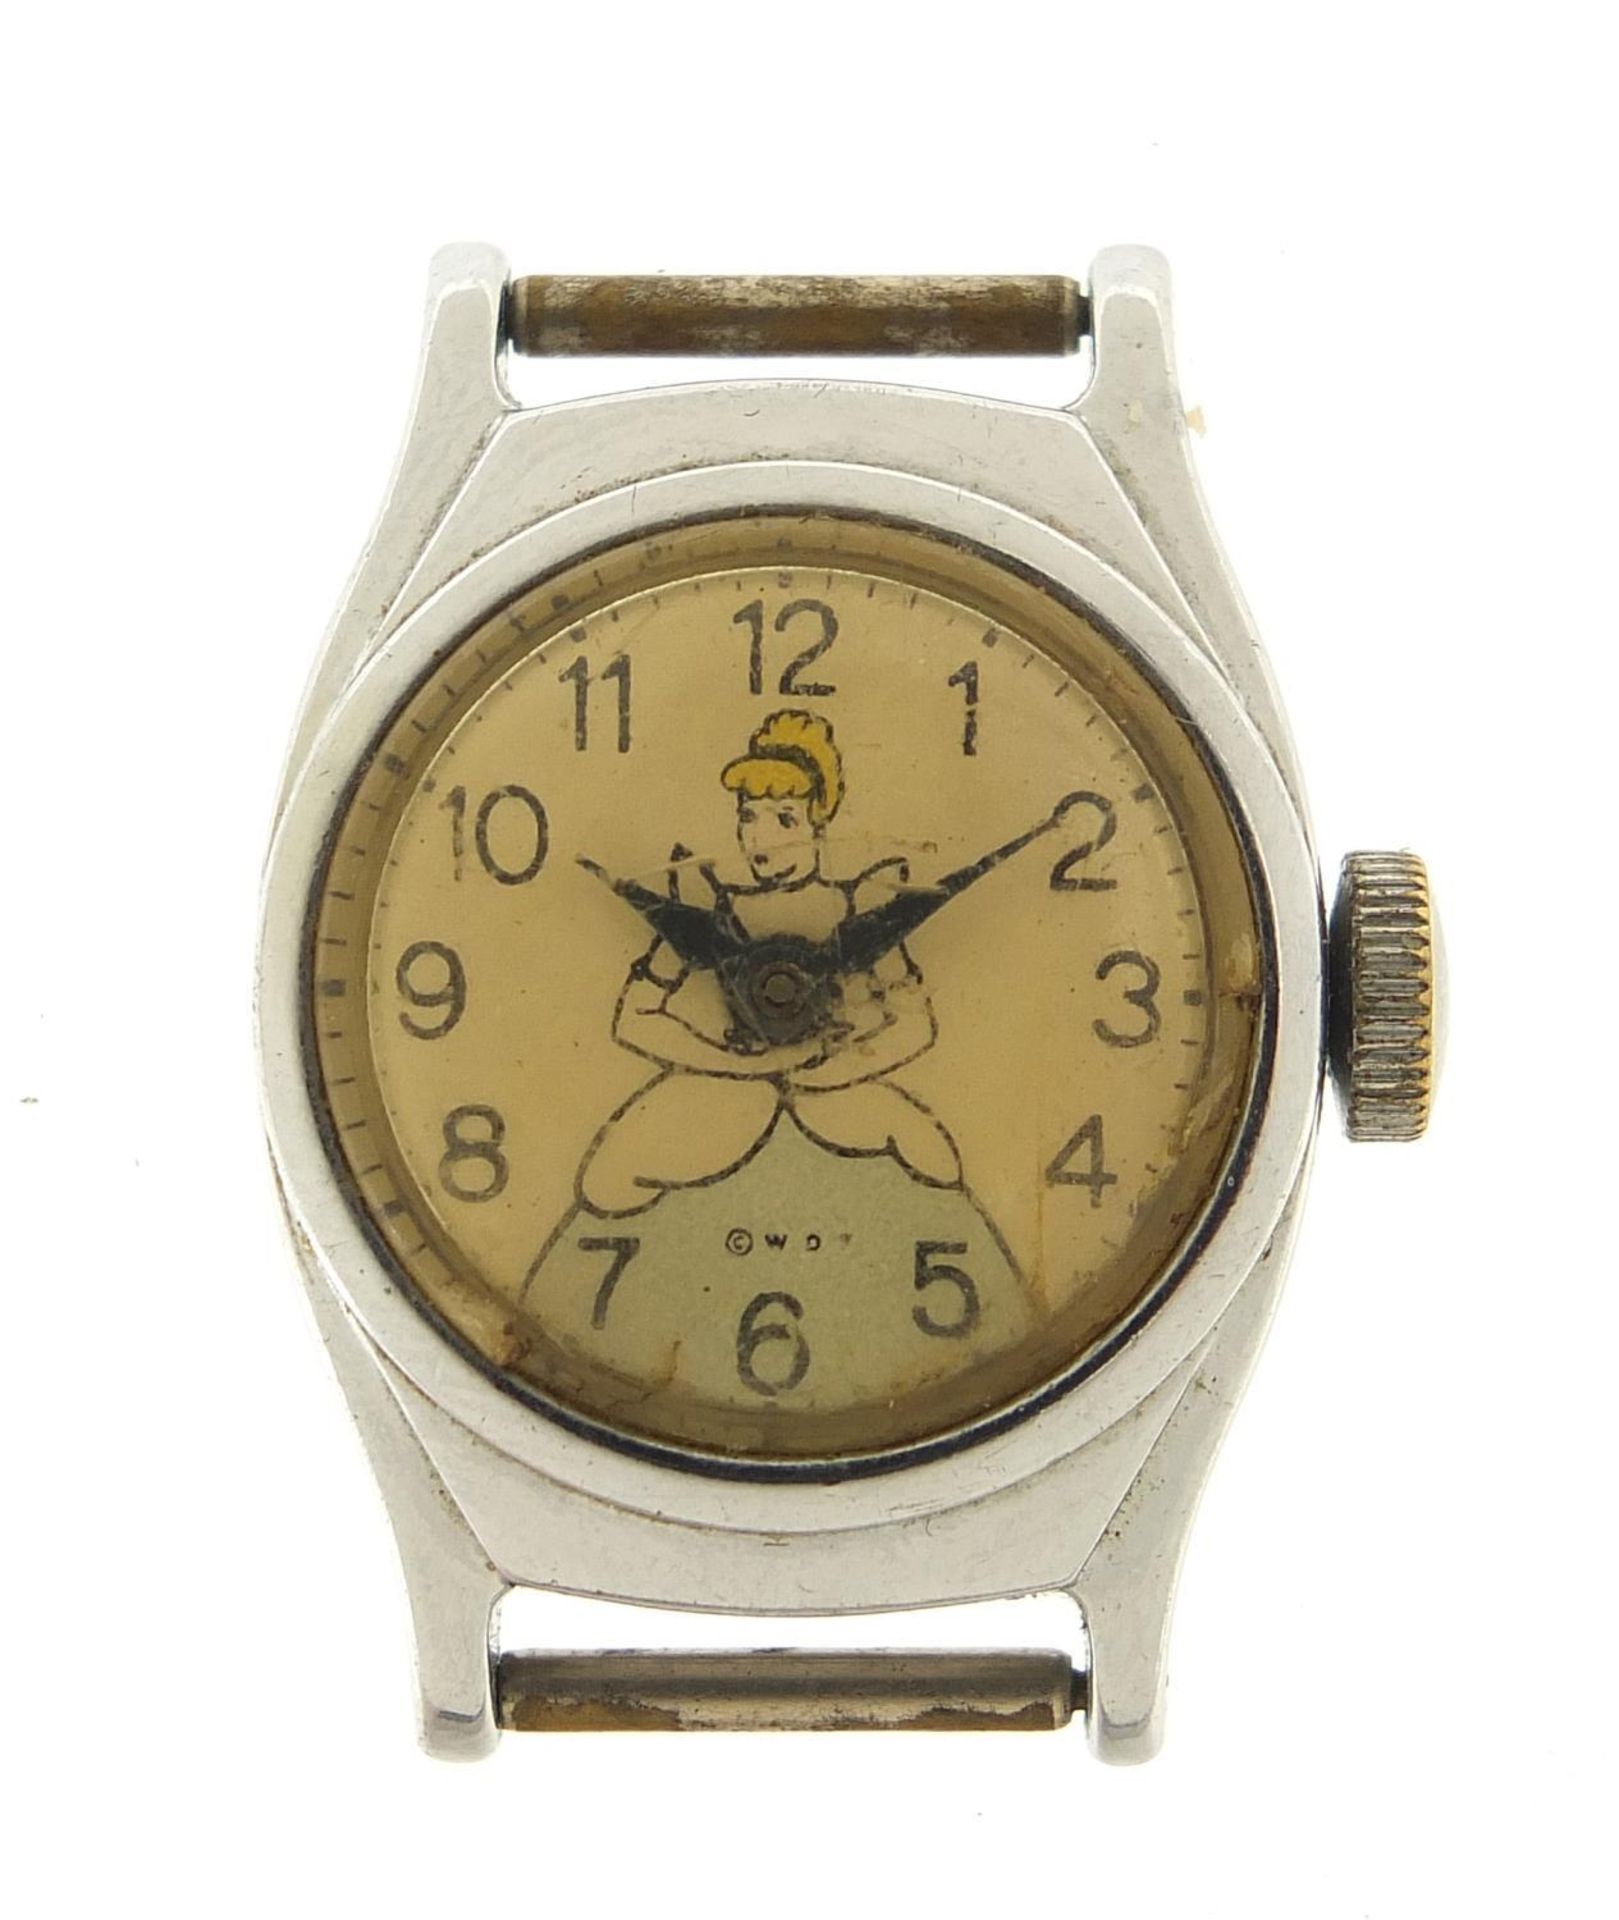 Timex, vintage Walt Disney Cinderella wristwatch, the case 23mm wide